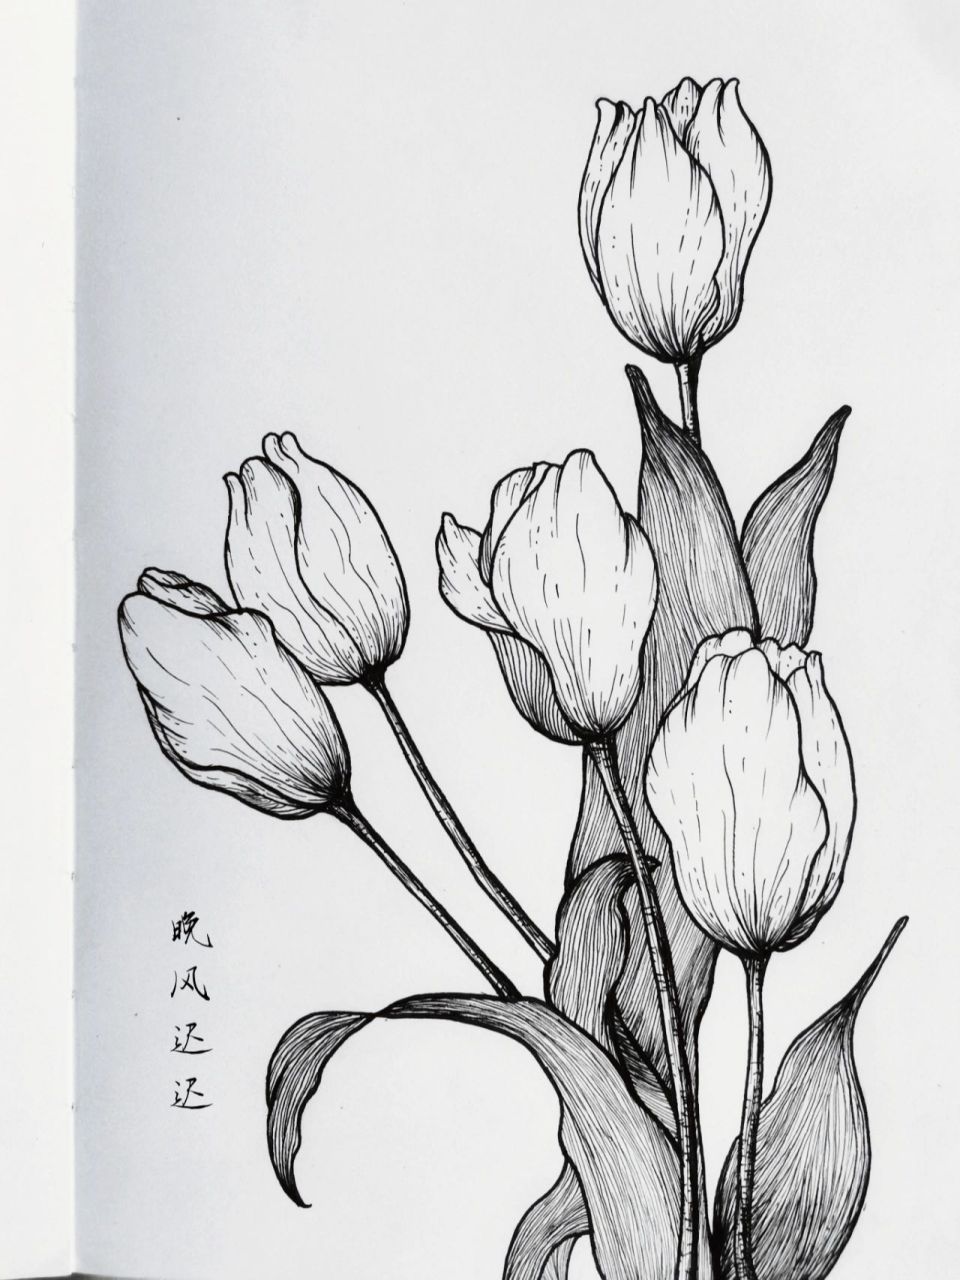 花卉图案黑白线描稿图片